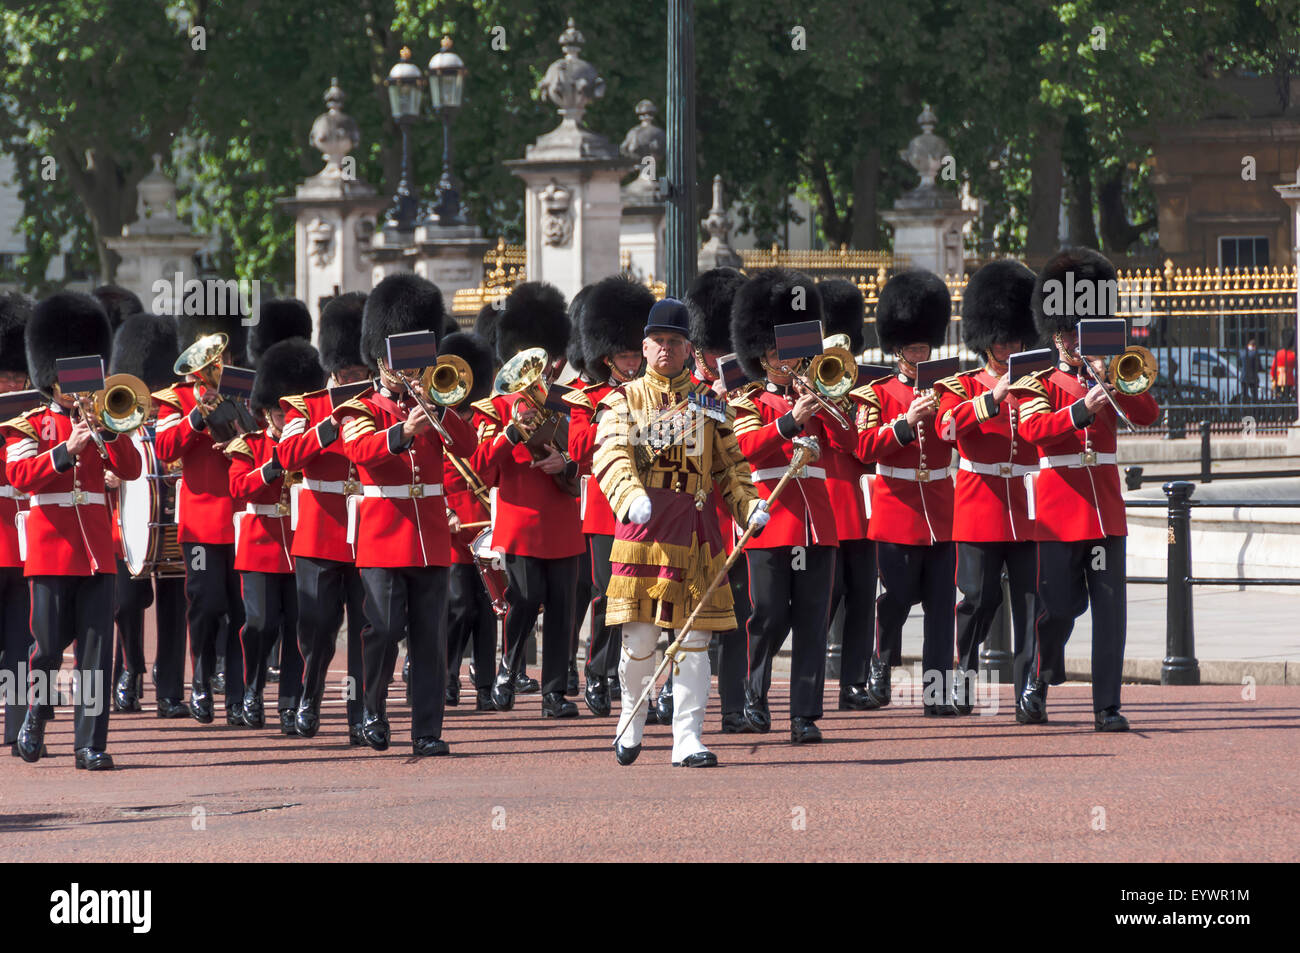 Marching Band militaire des gardes du palais de Buckingham passé en route pour la parade de la couleur, Londres, Angleterre, Royaume-Uni Banque D'Images